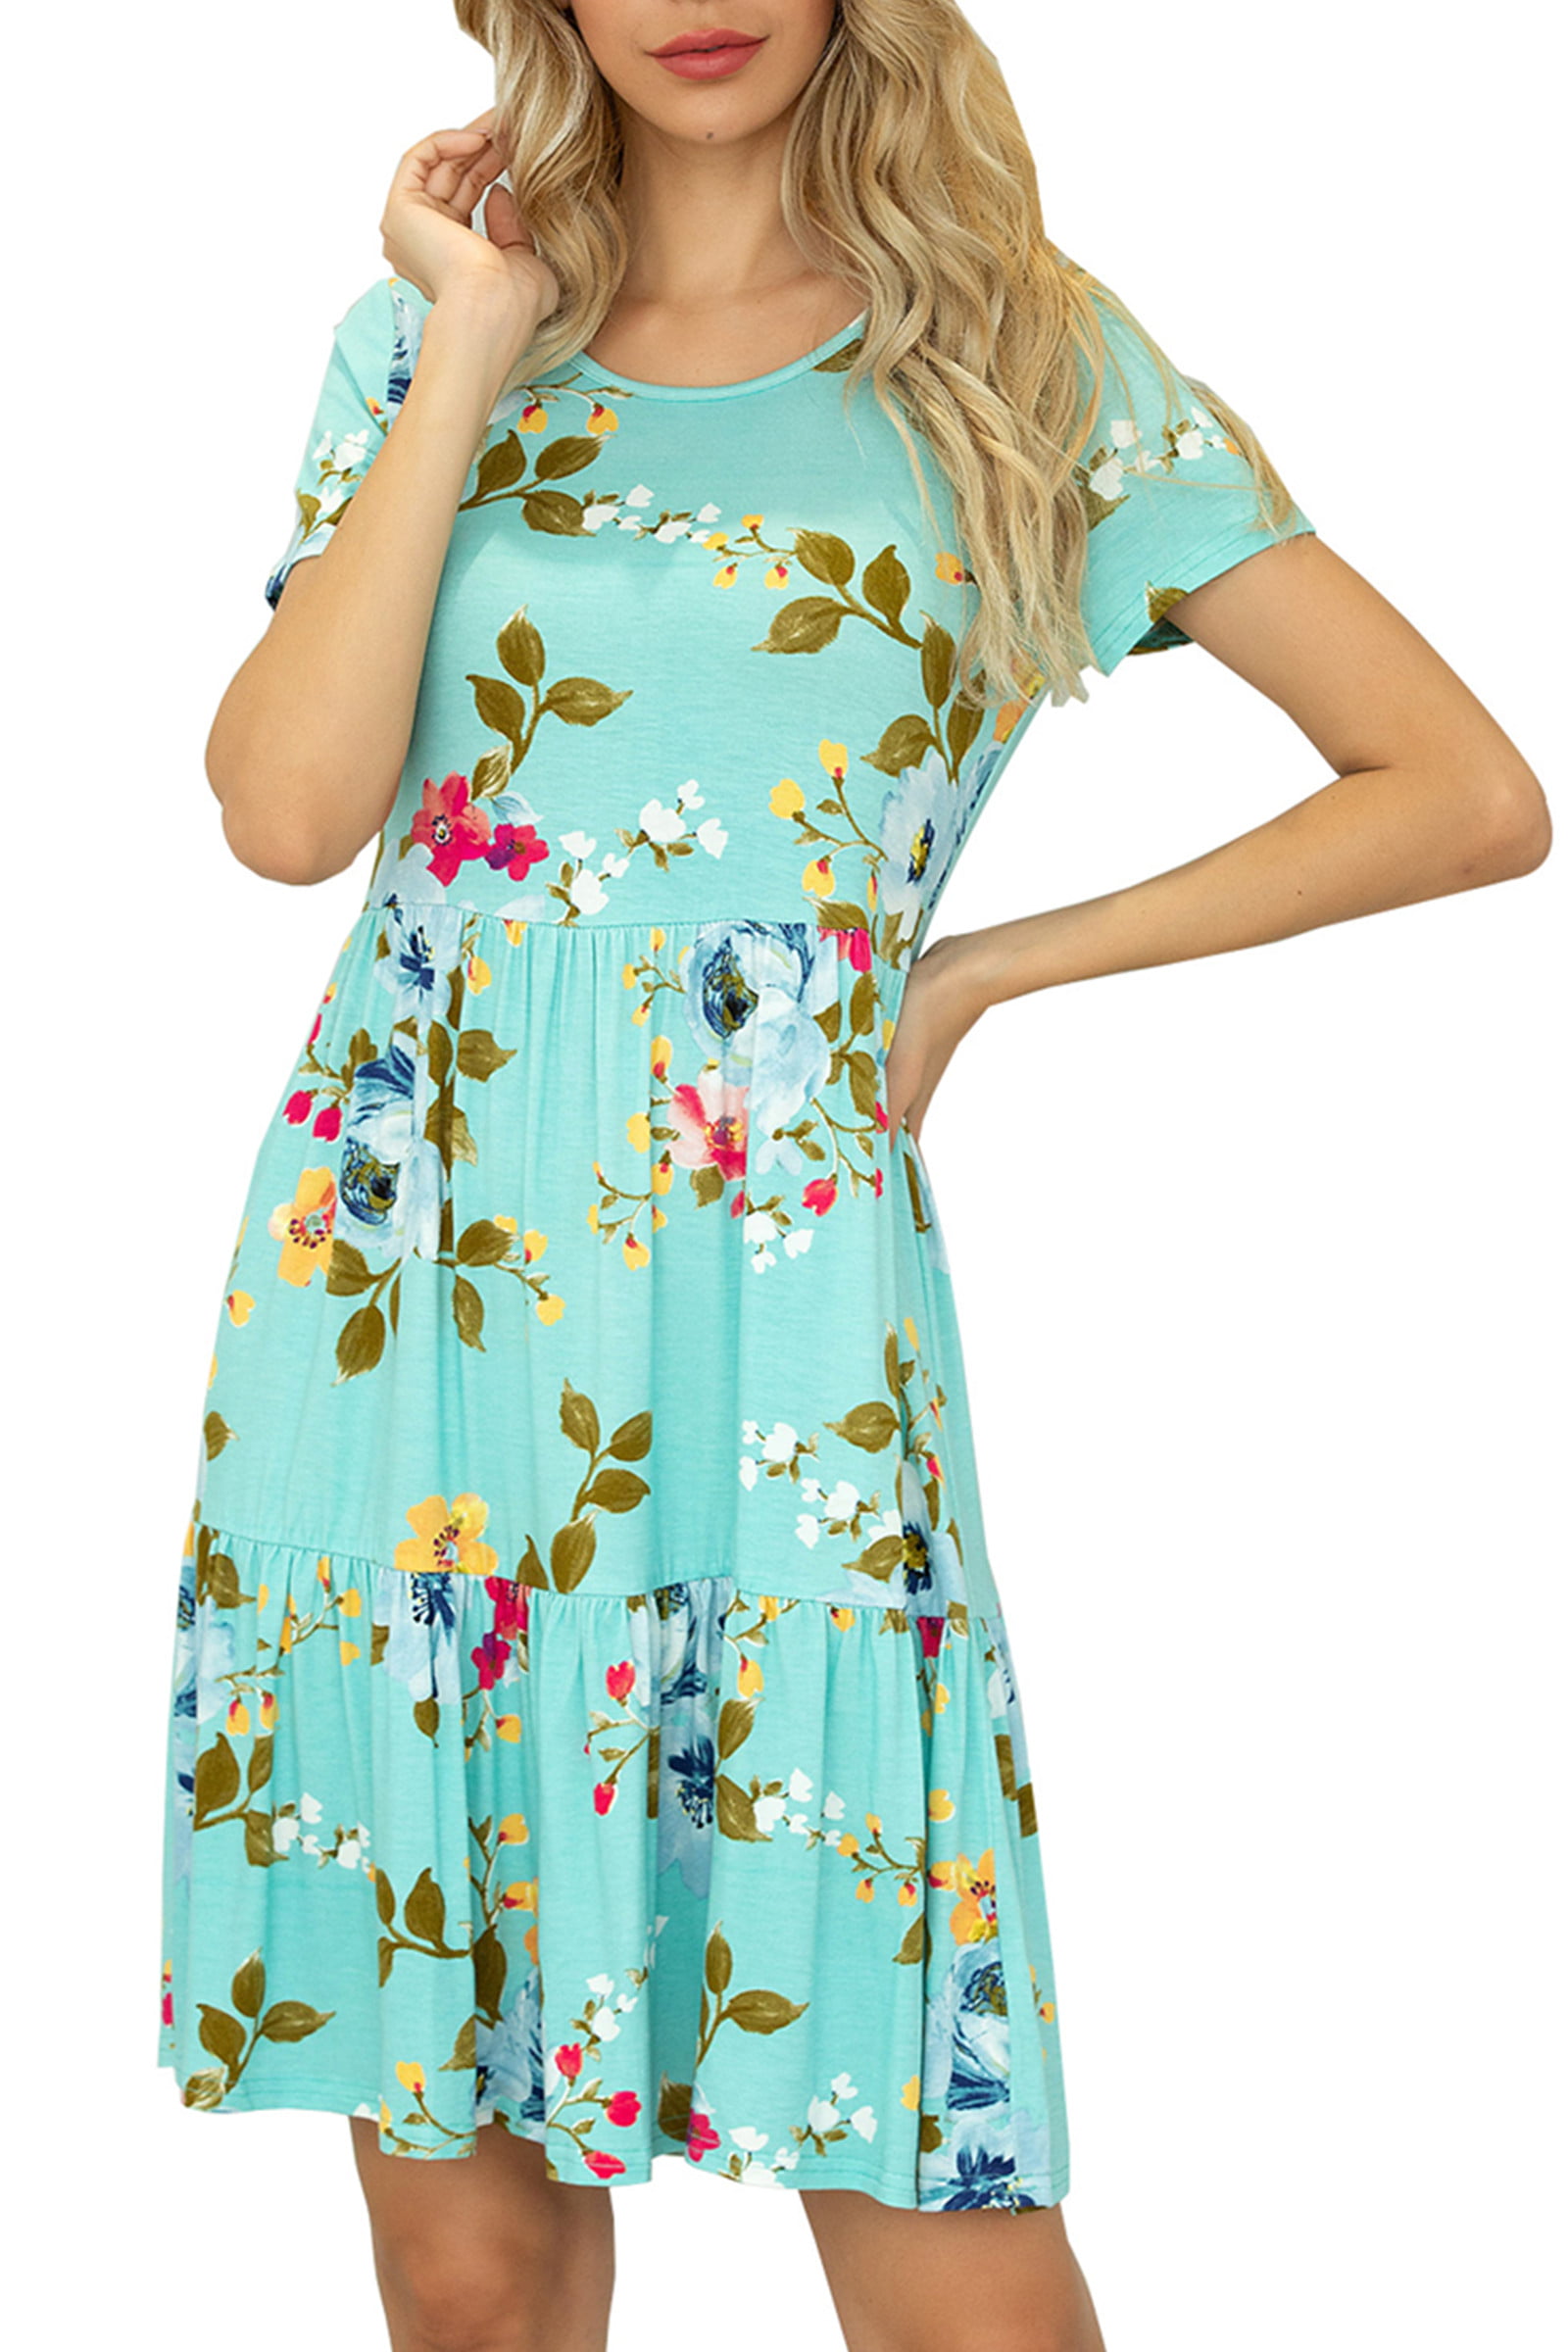 CALIPESSA Womens Summer Tiered Layer Green Floral Print Short Dress ...